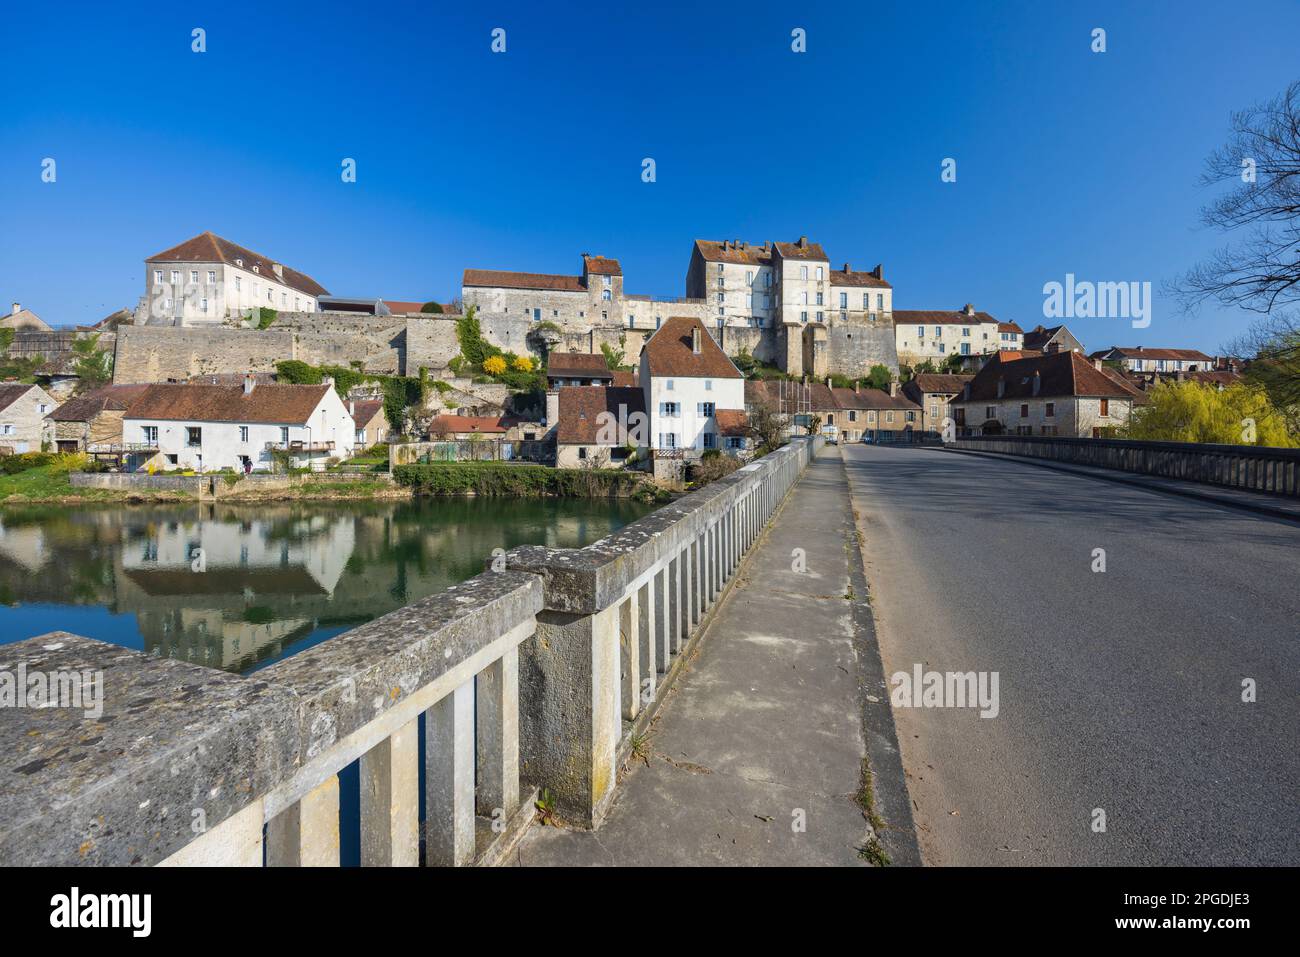 Petite ville typique de Pesmes avec la rivière L Orgon, haute-Saone, France Banque D'Images